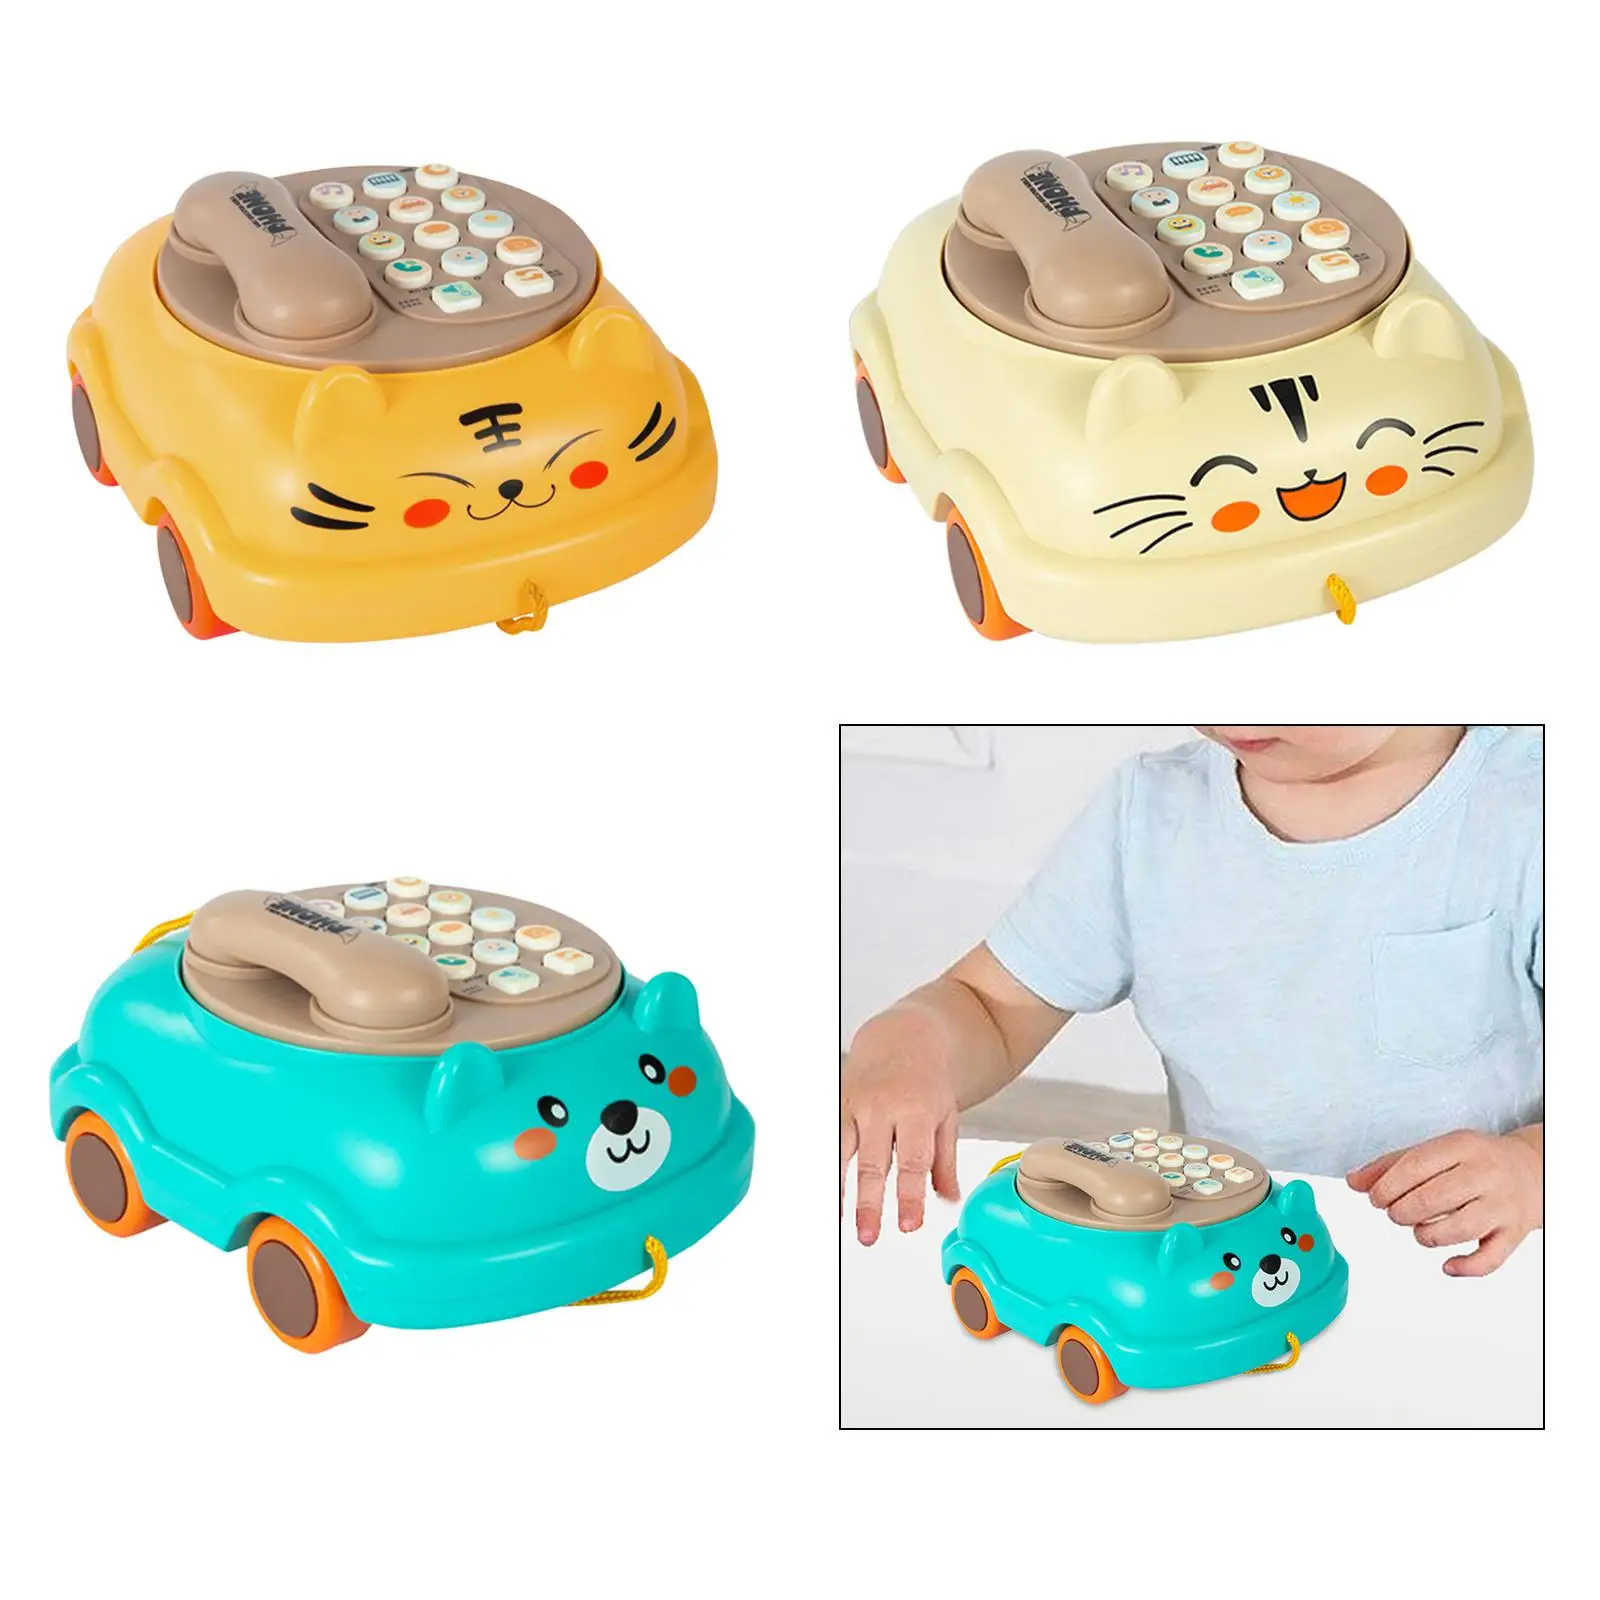 Kid Phone sviluppo cognitivo giocattolo luci pianoforte apprendimento precoce giocattolo telefoni giocattolo per l'apprendimento educativo prescolare ragazza